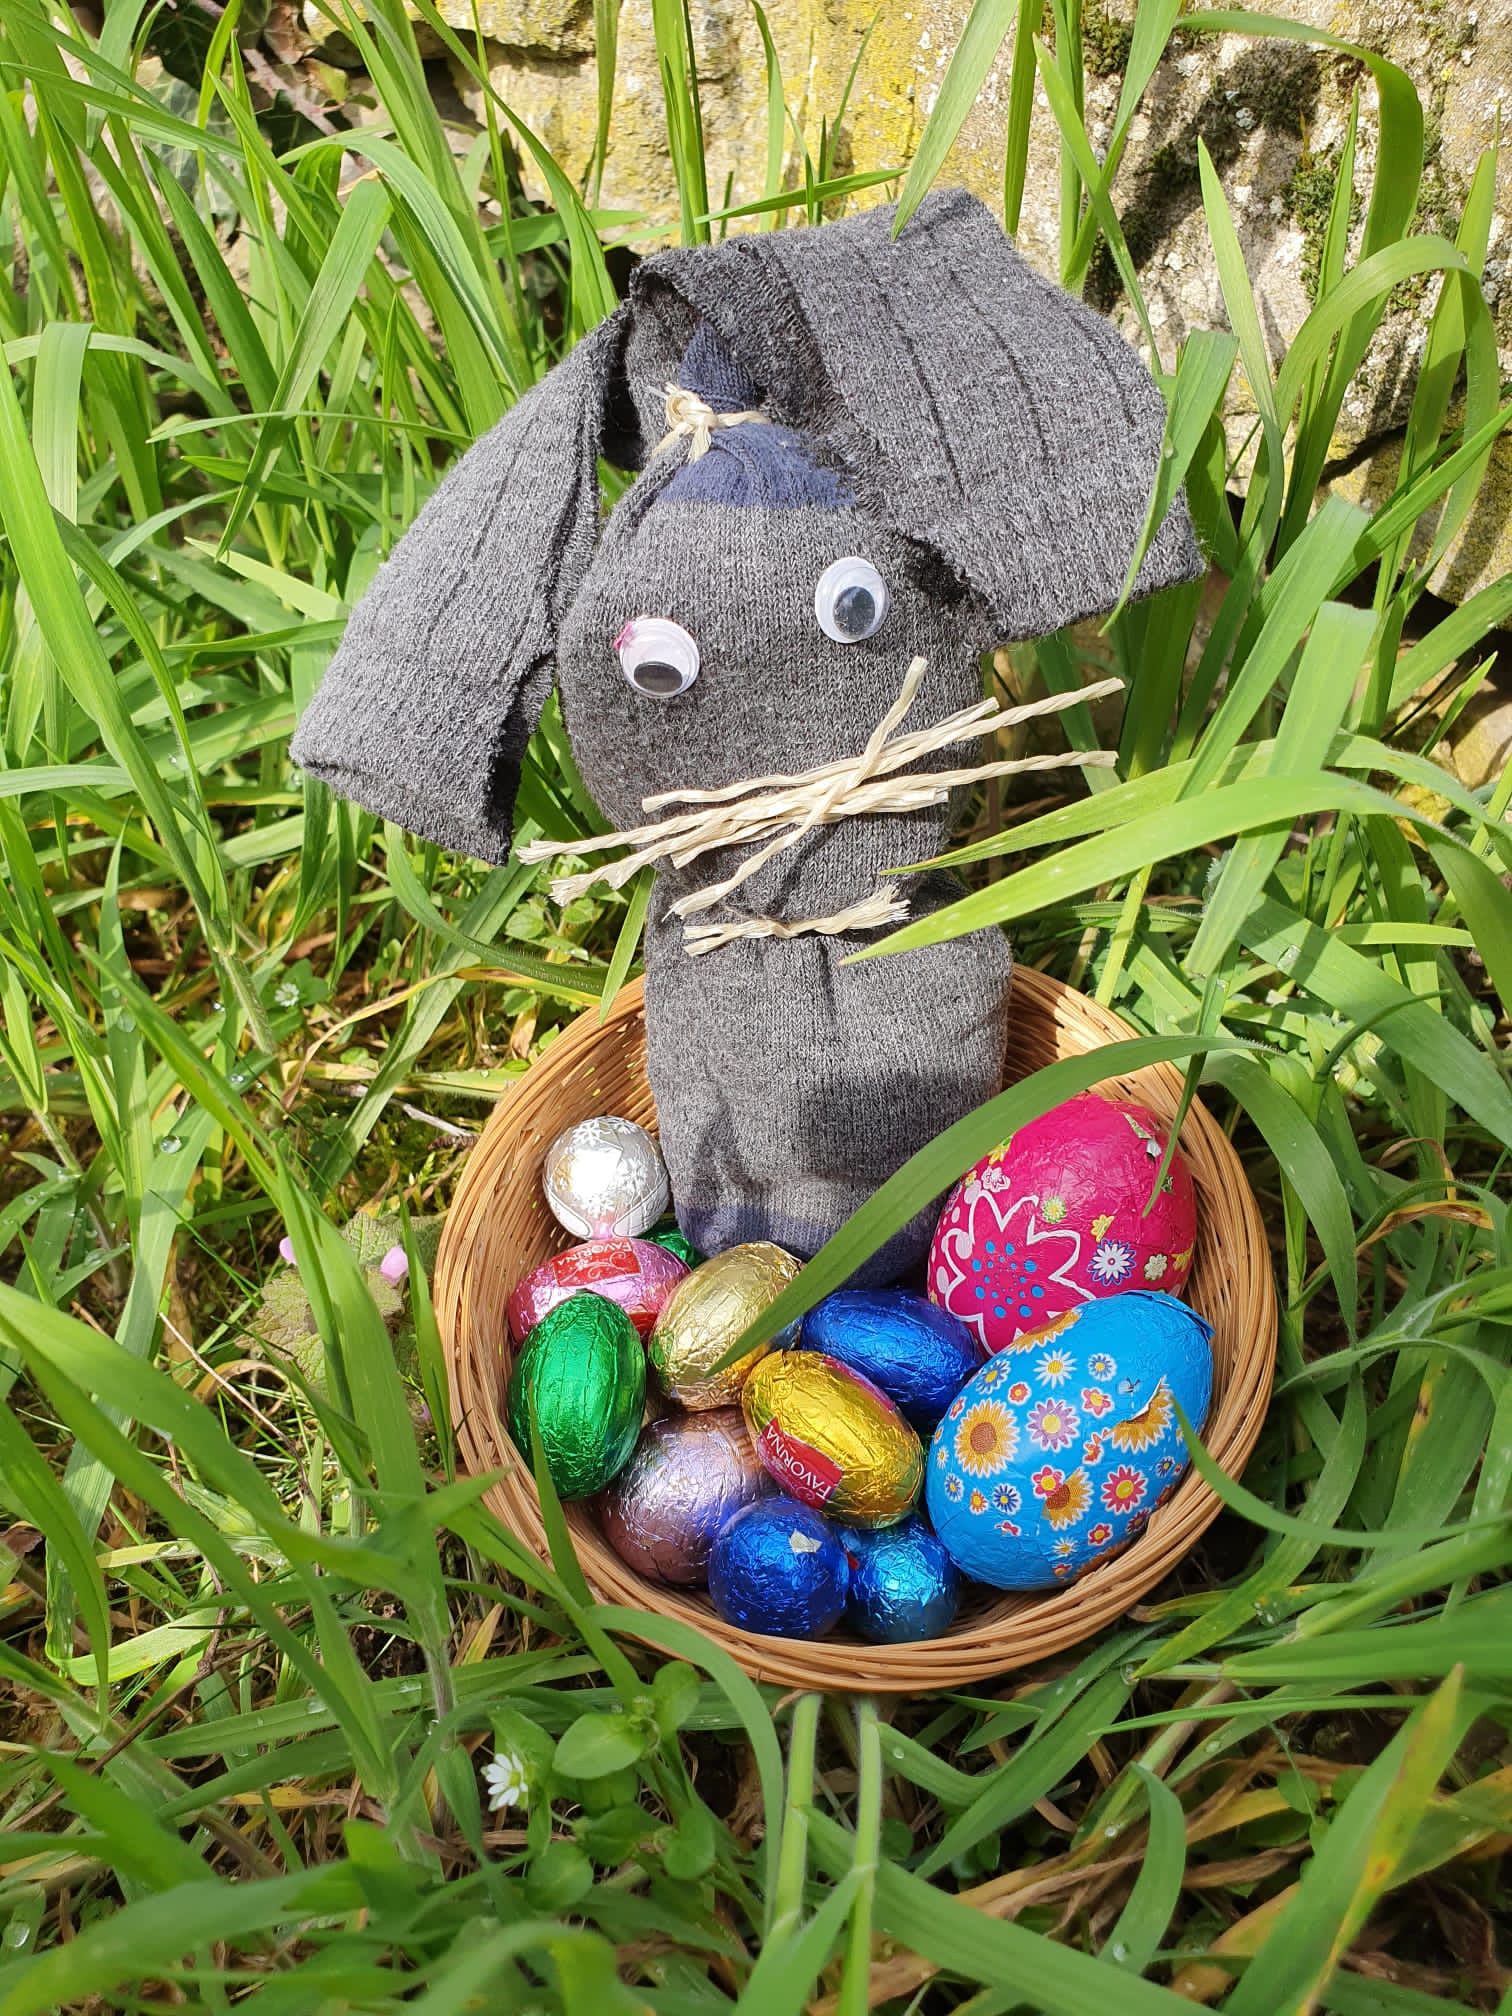 Bild zum Schritt 11 für das Bastel- und DIY-Abenteuer für Kinder: 'Fertig ist ein schönes Ostergeschenk.'